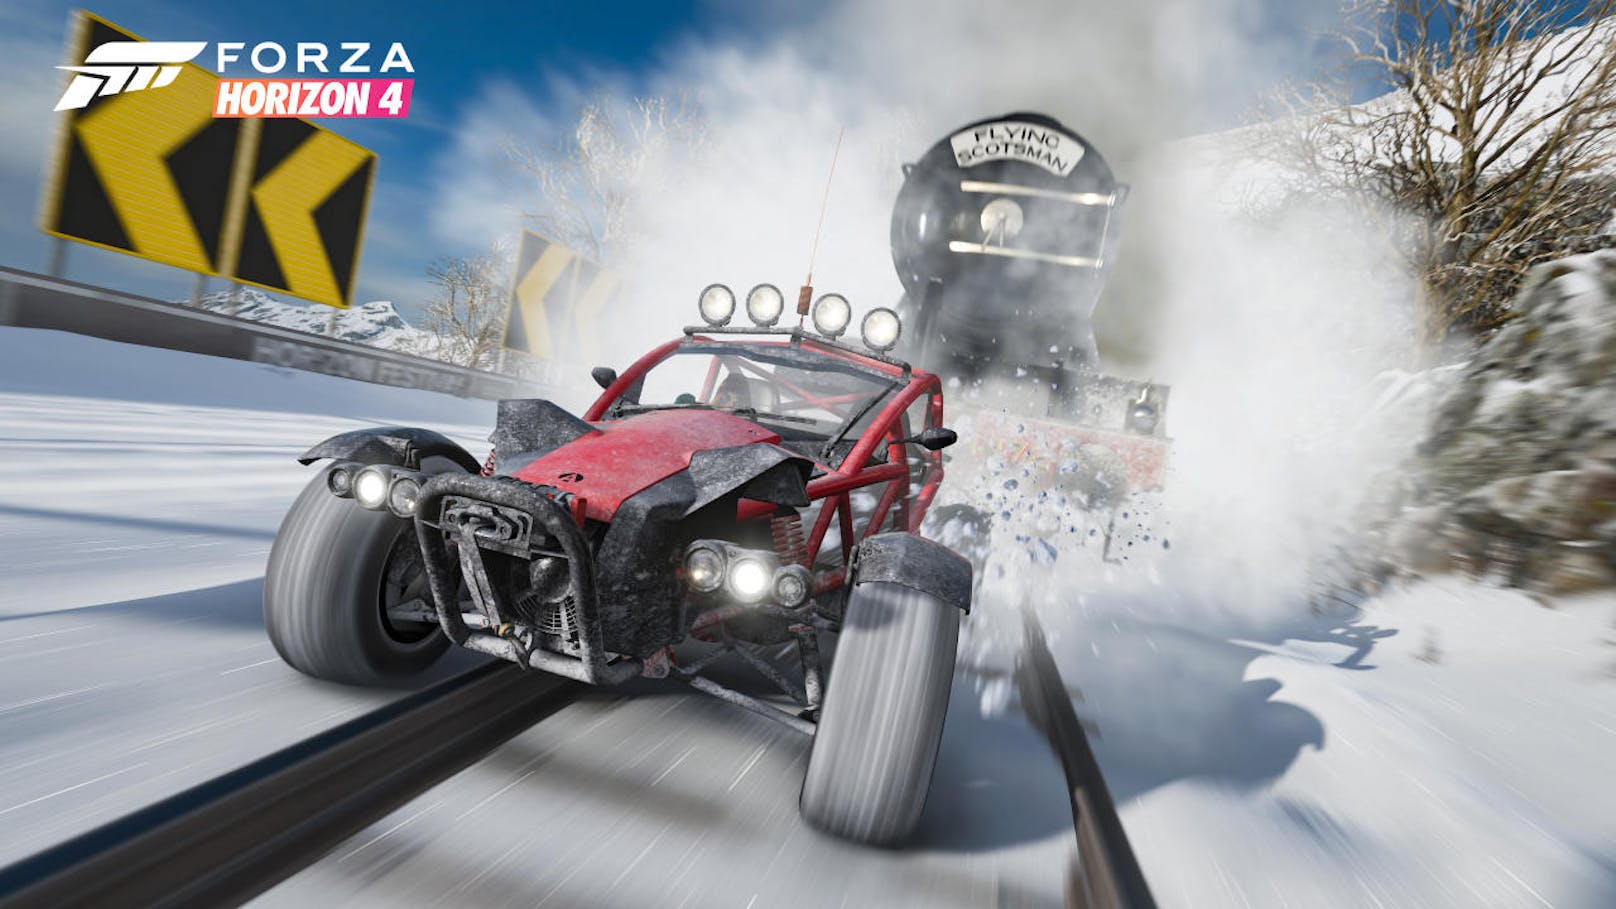 Forza Horizon 4 stellt es dem Spieler frei, welche Rennen er fährt, um sich für den Horizon-Kader zu qualifizieren. Will man nur auf der Straße fahren, kann man das tun, ebenso mit Offroad-Rennen.